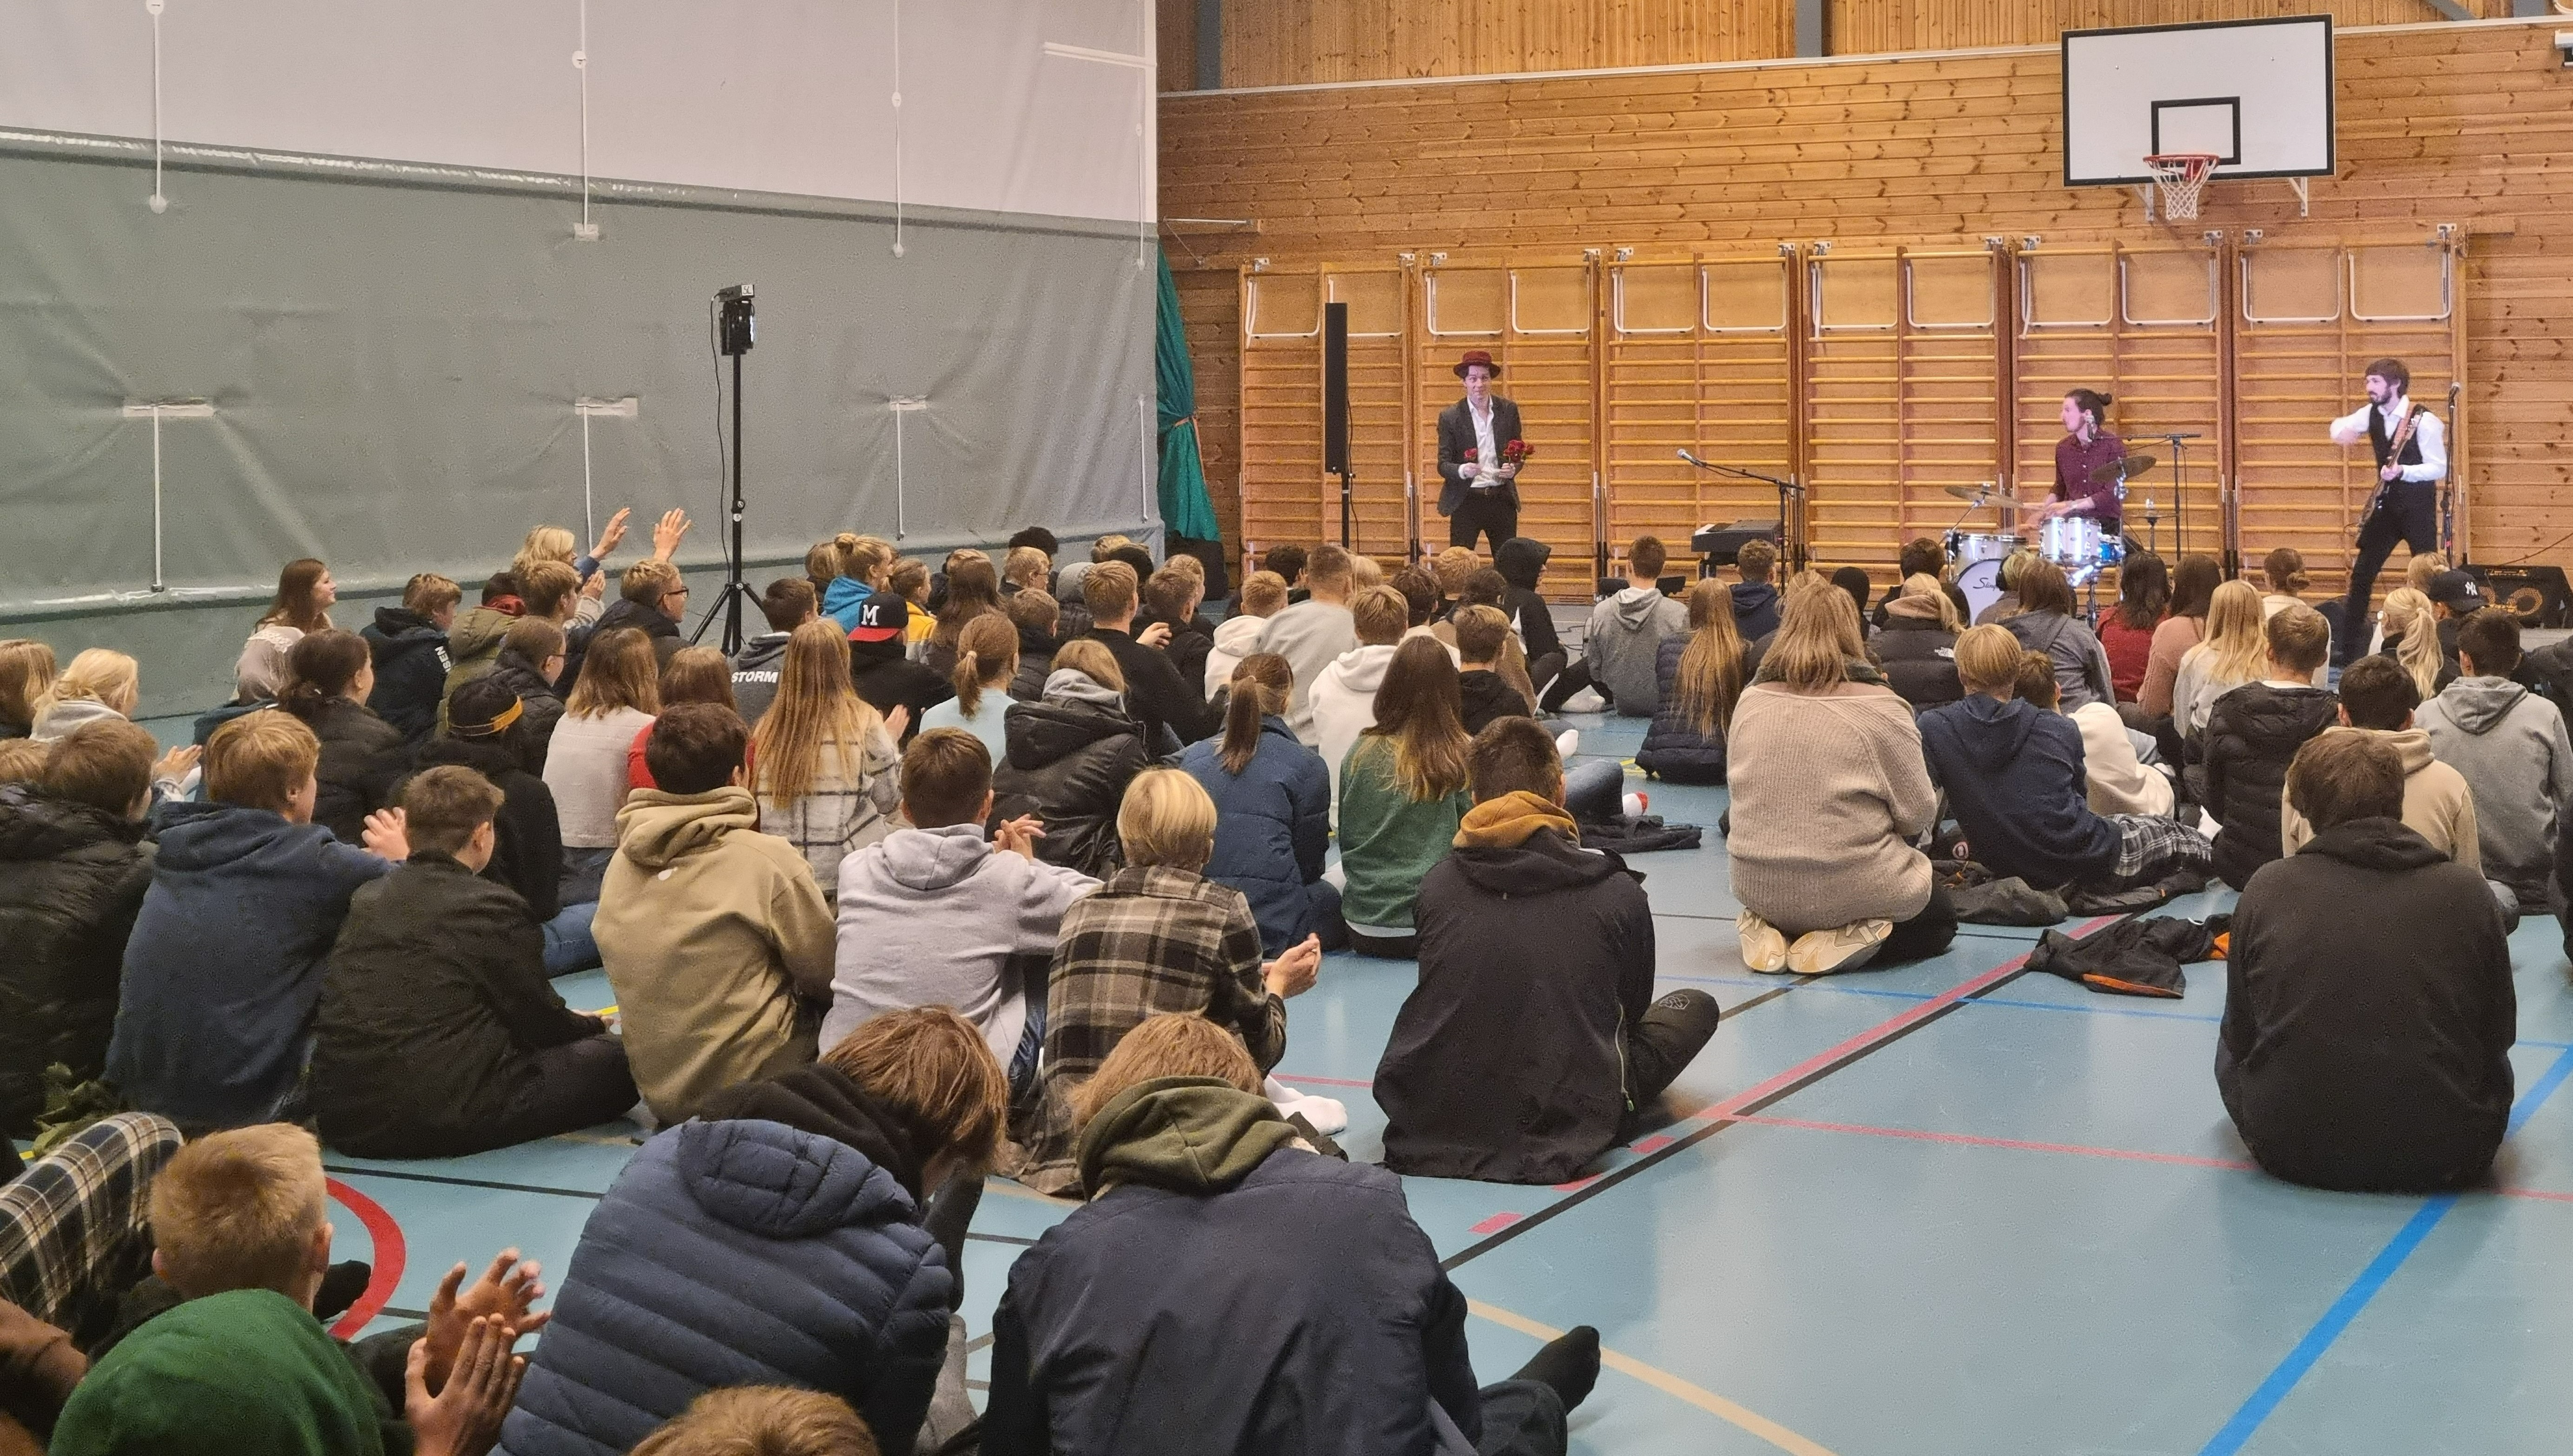 Konsert med Daniel Røssing Trio på en skole i Porsgrunn. Elever som sitter på gulvet i en gymsal, og tre musikere i enden som spiller trommer, bass og pianio.